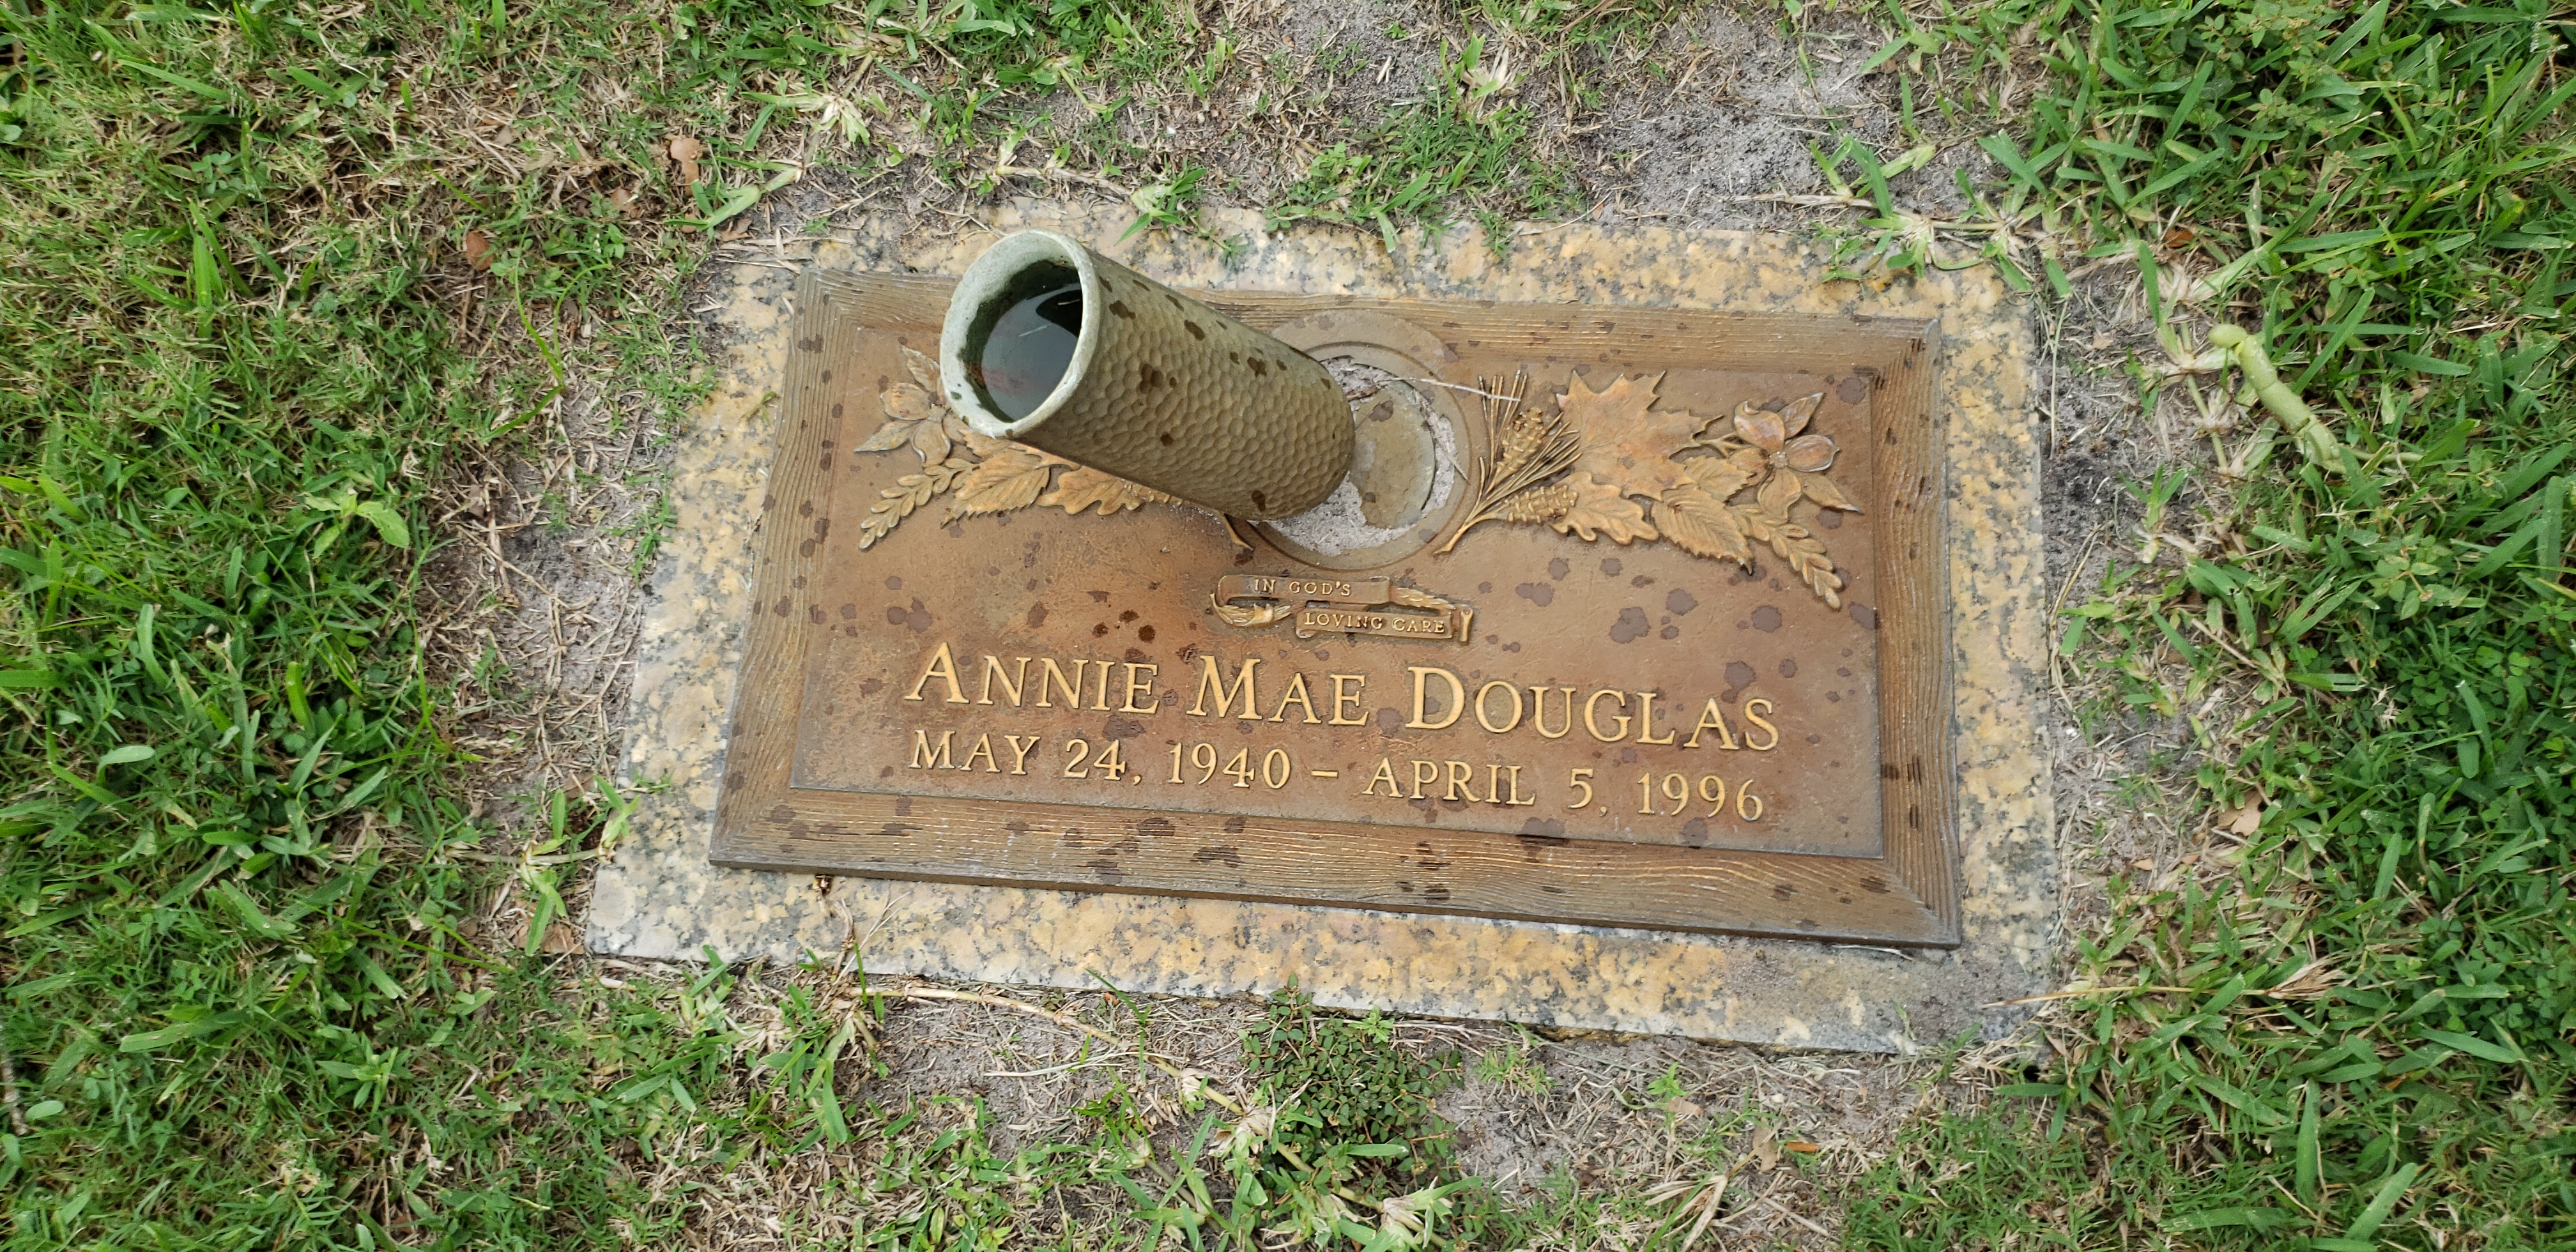 Annie Mae Douglas